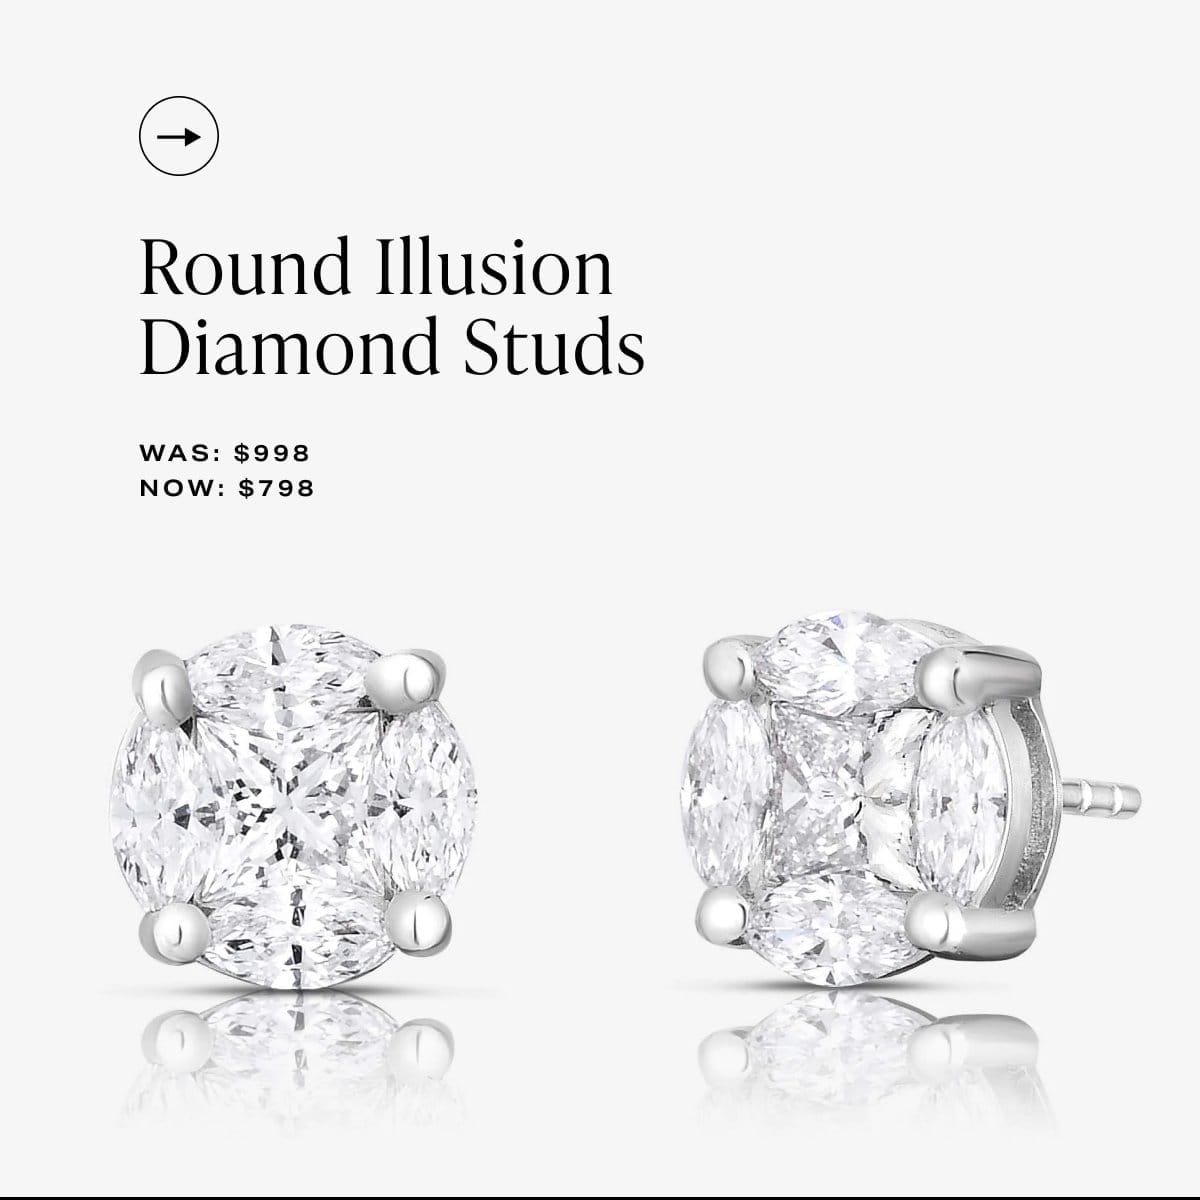 Round Illusion Diamond Studs